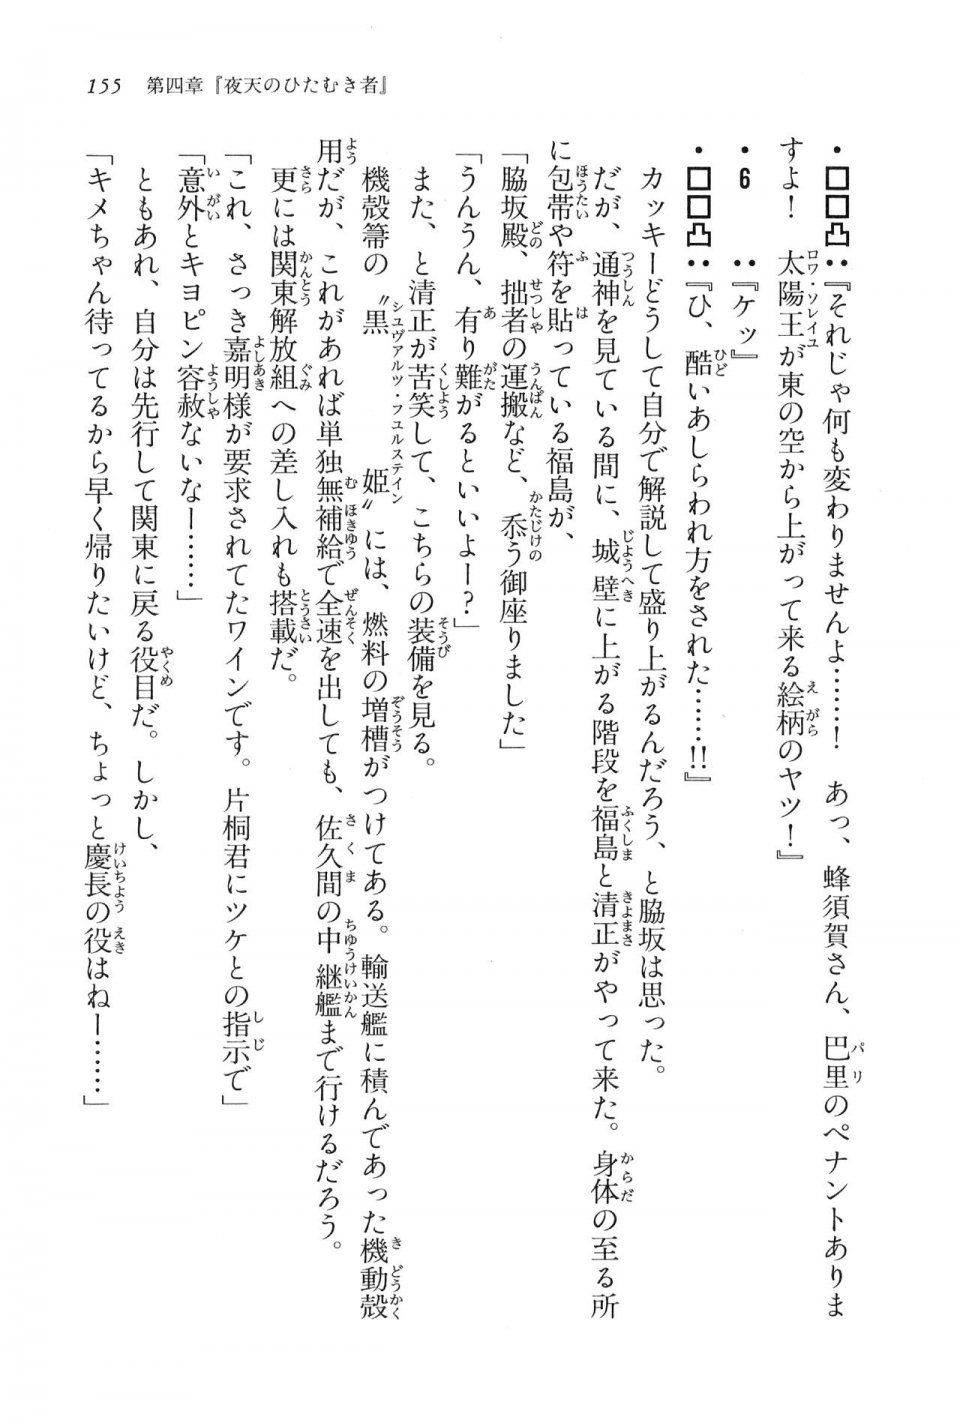 Kyoukai Senjou no Horizon LN Vol 16(7A) - Photo #155